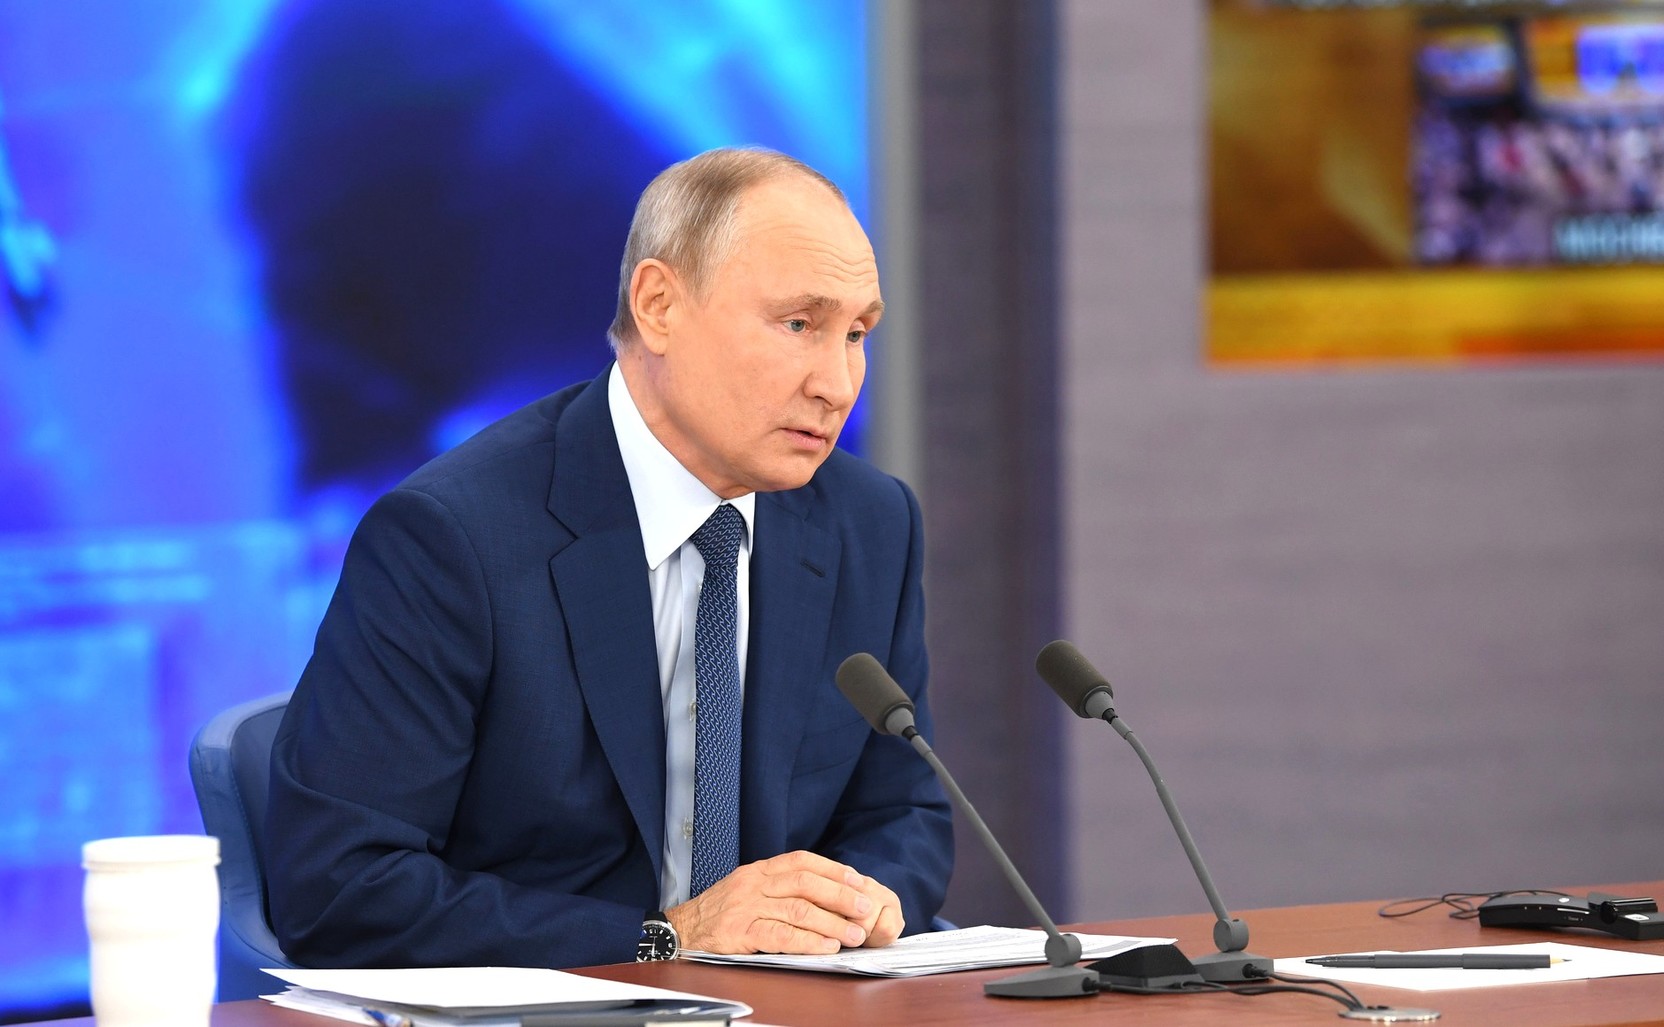 Путин поручил разобраться с зарплатами ученых в регионах РФ